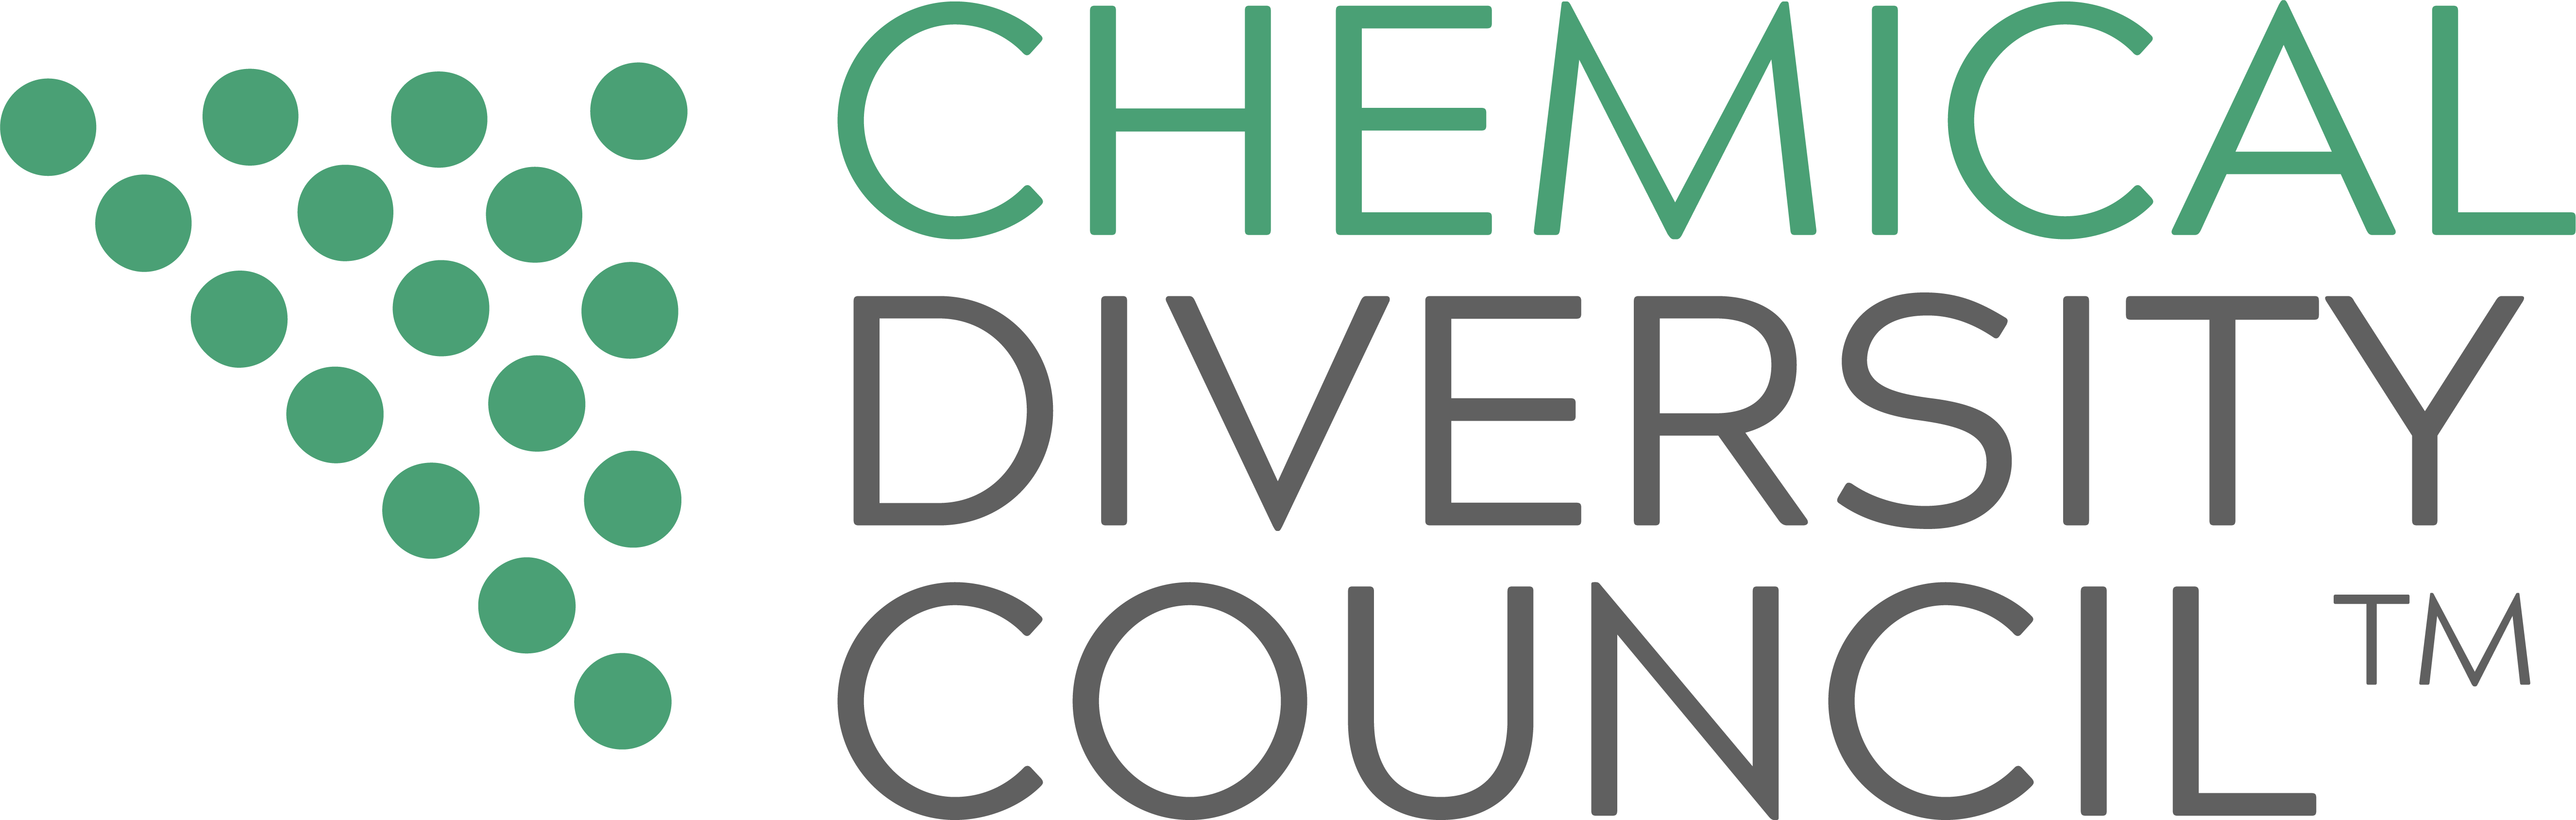 Chemical Diversity & Inclusion Council